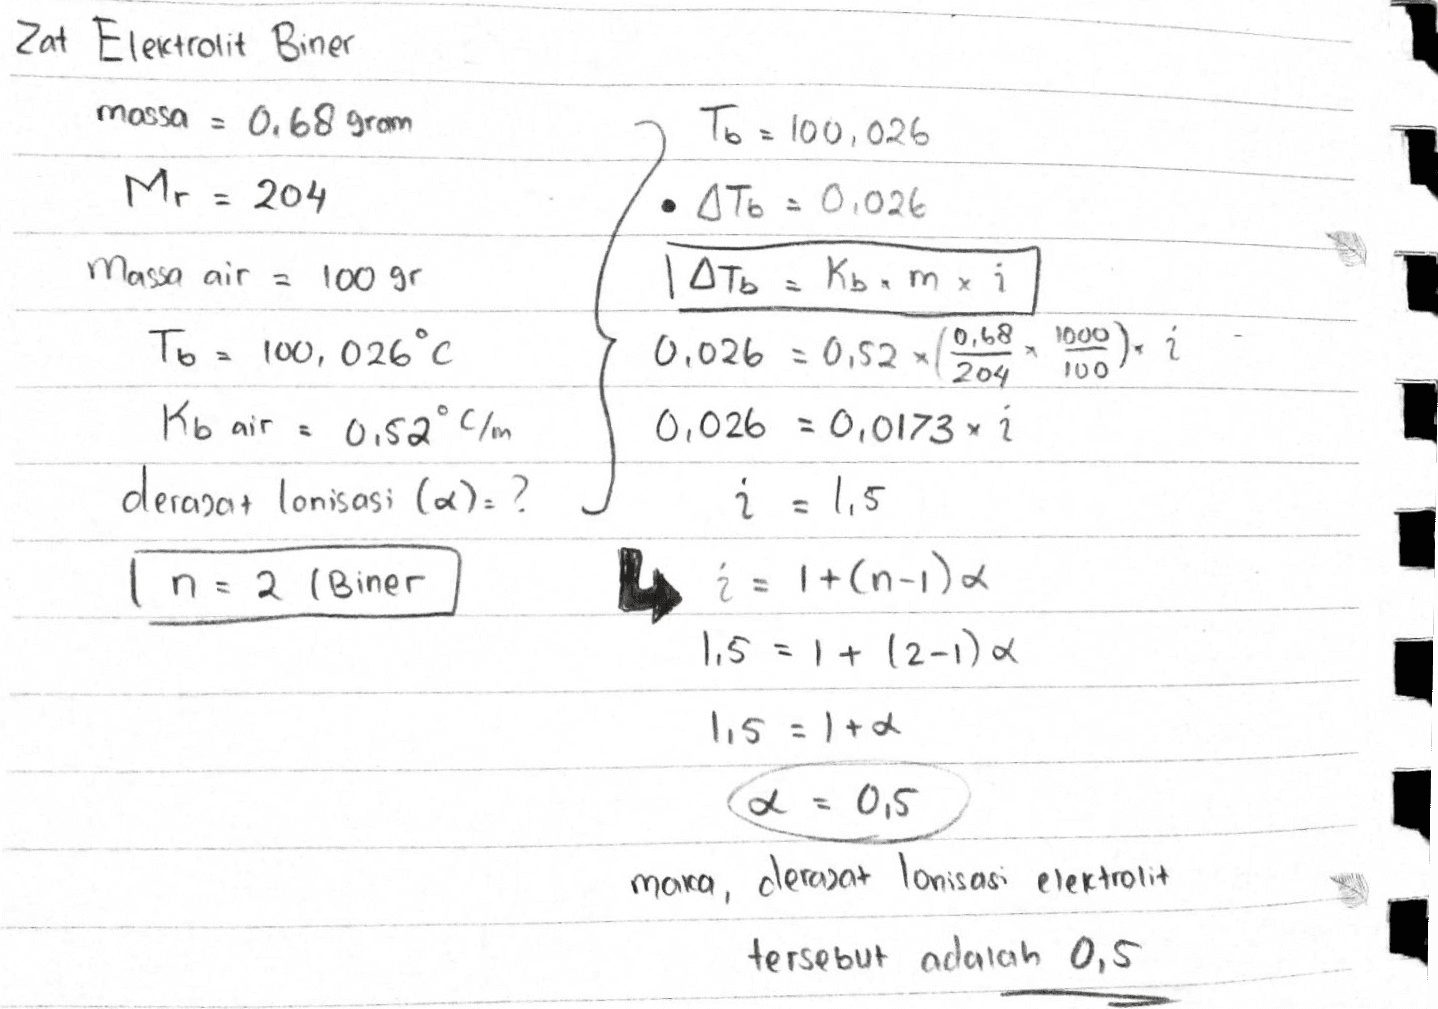 Zat Elektrolit Biner massa 0.68 gram To = 100,026 Mr = 204 Massa air a 100 gr To = 100, 026°c C • AT6 = 0.026 | Оть Kb.mxi 0,68 0,026 = 0,52 204 0,026 = 0,0173 x 1 Ź = 1,5 1000). í 100 Kb air = 0.52°C/m derapant lonisasi («):? 2 (Biner LA = 1+(n-1), 1,5 = 1+12-12 115 = 1 + 2 2 = 0,5 clerozat Ionisasi elektrolit maica, tersebut adalah 0,5 